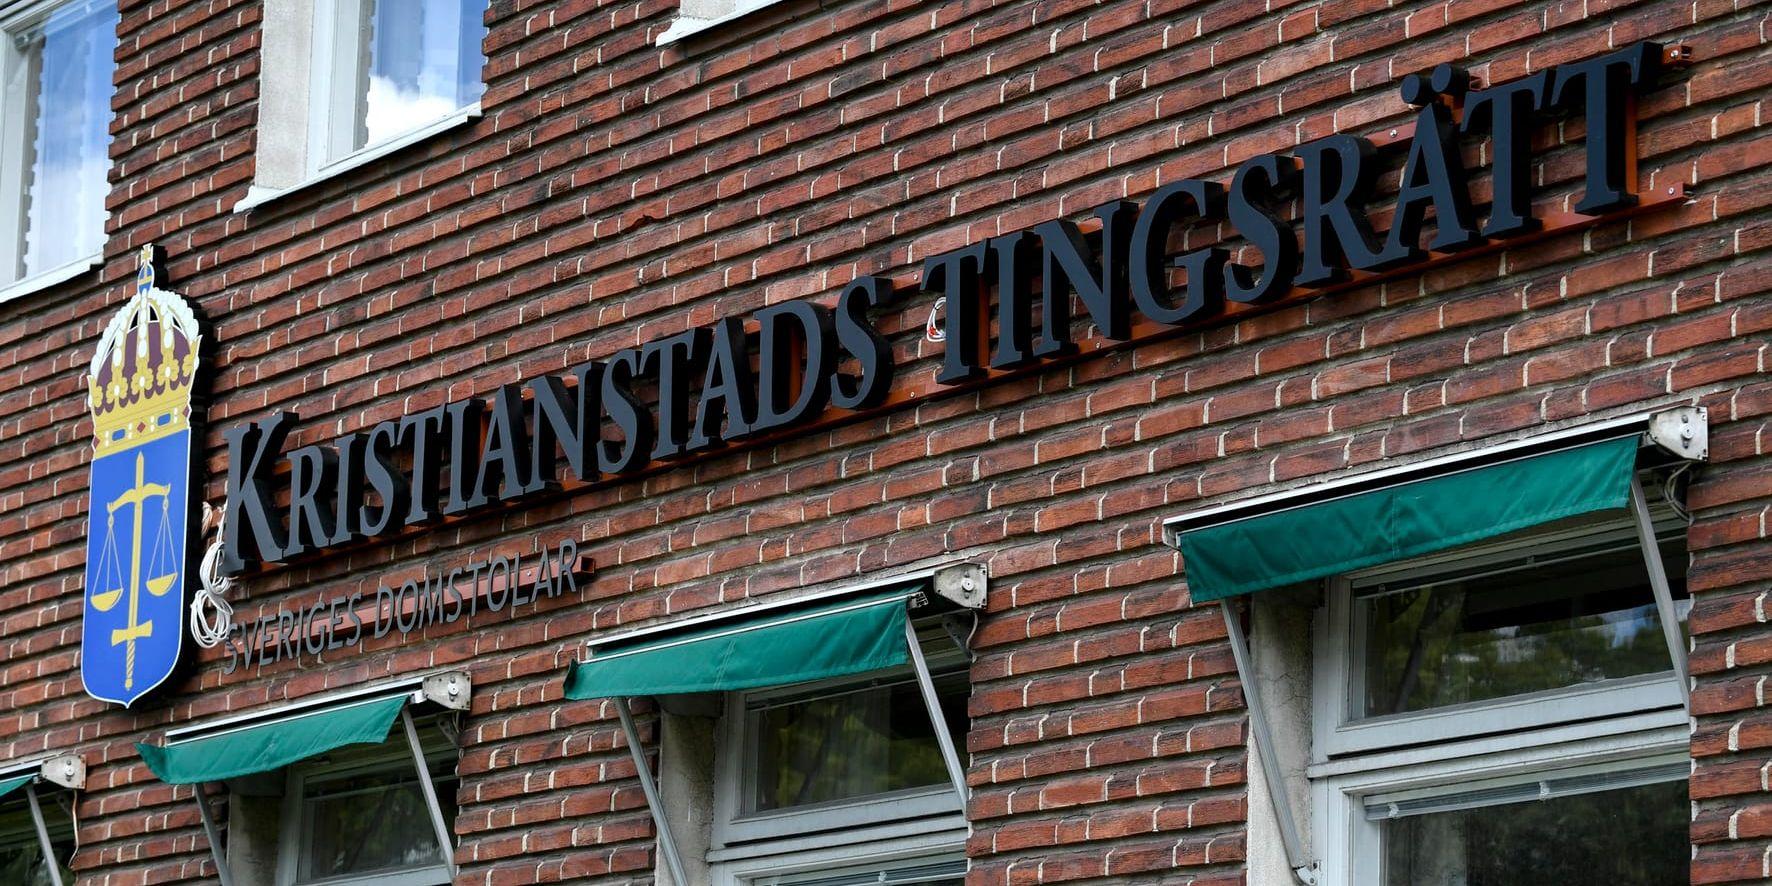 Åtal har nu väckts vid Kristianstads tingsrätt för det grova rånet mot en kennel i januari i år. Arkivbild.